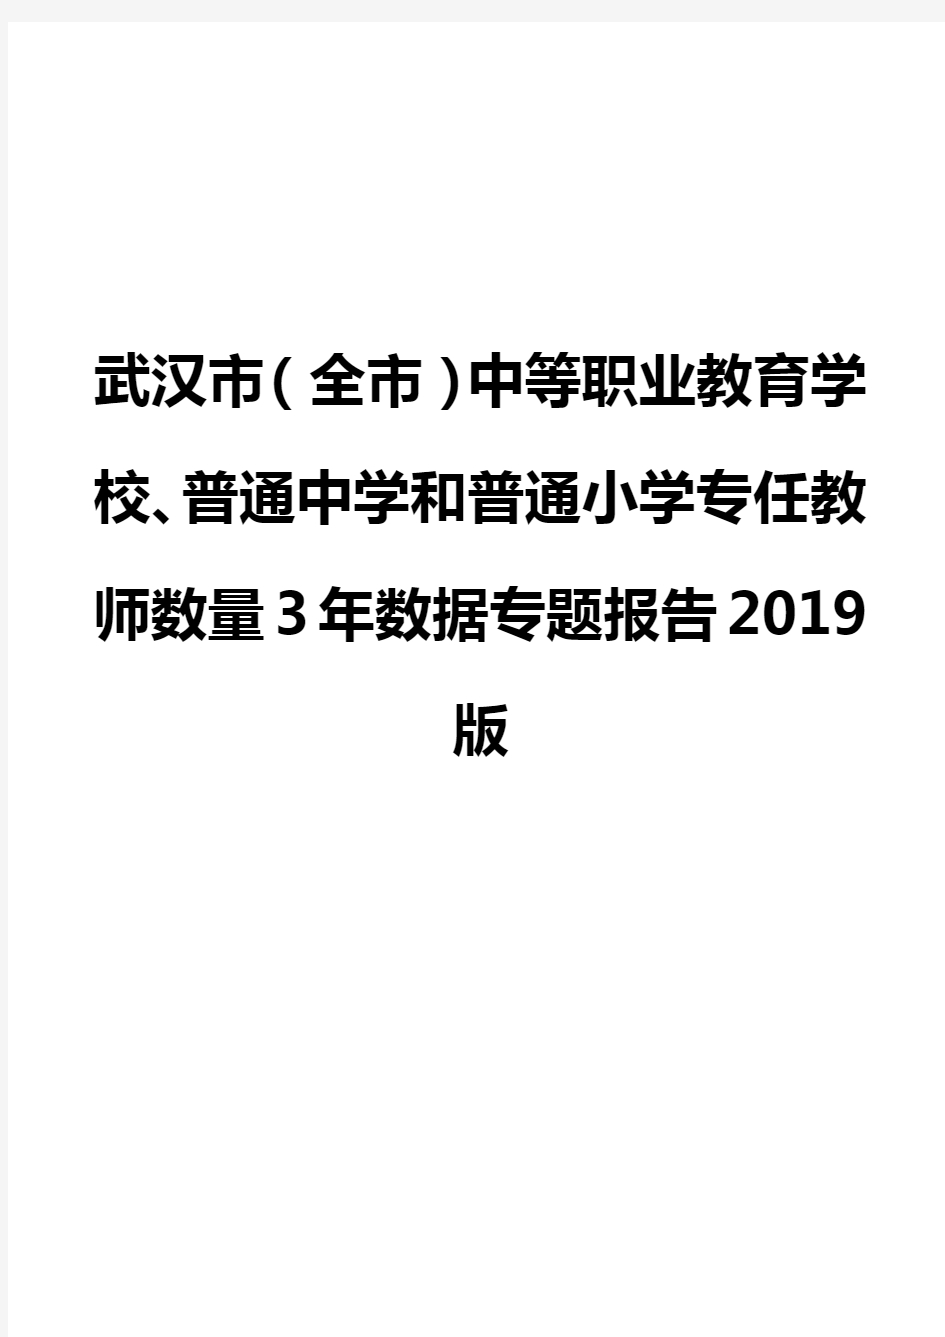 武汉市(全市)中等职业教育学校、普通中学和普通小学专任教师数量3年数据专题报告2019版